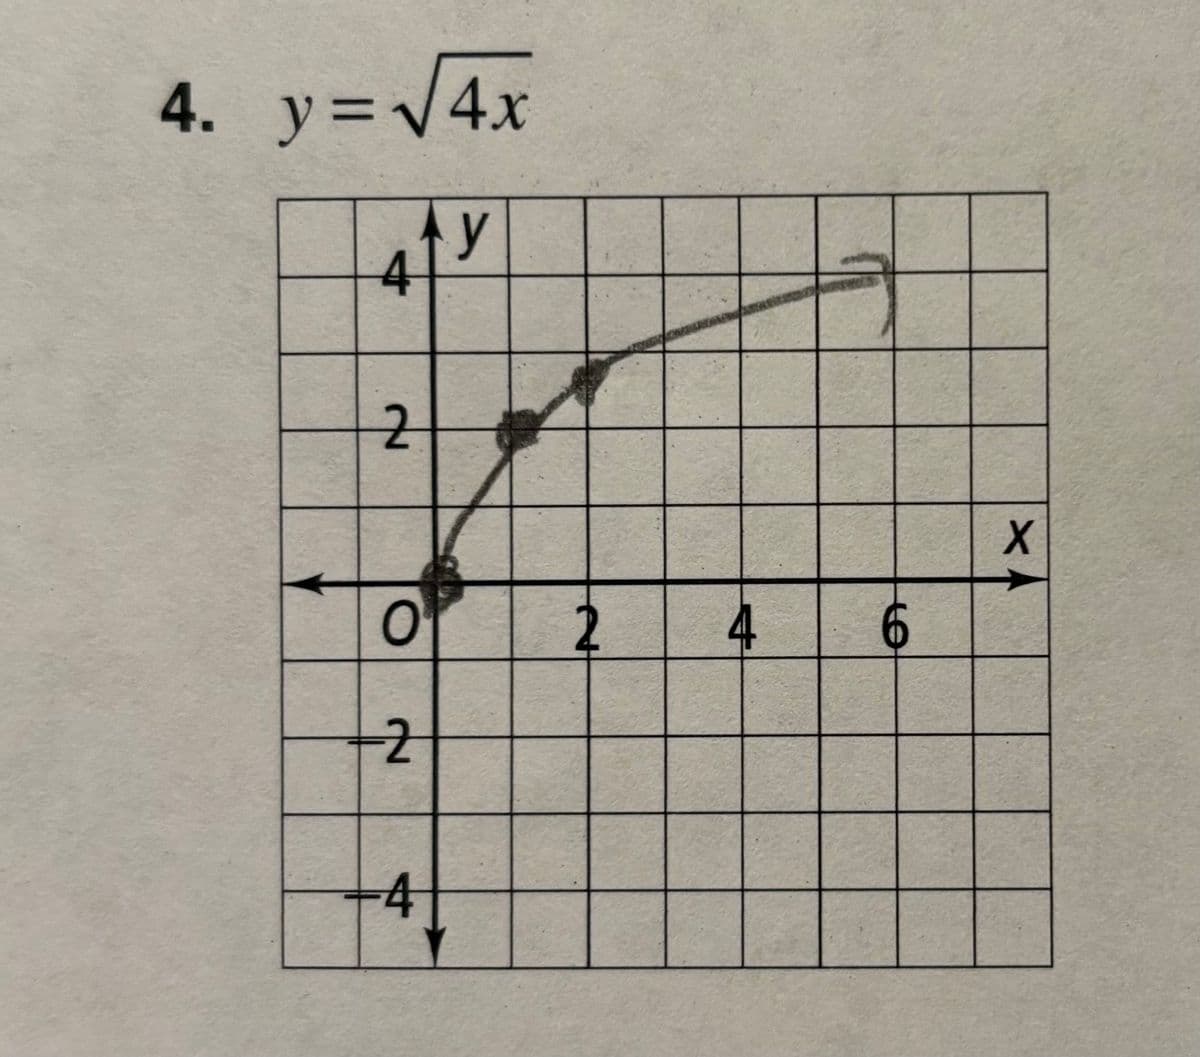 4. y = √√4x
y
4
2
O
-2
-4
2
4
6
X